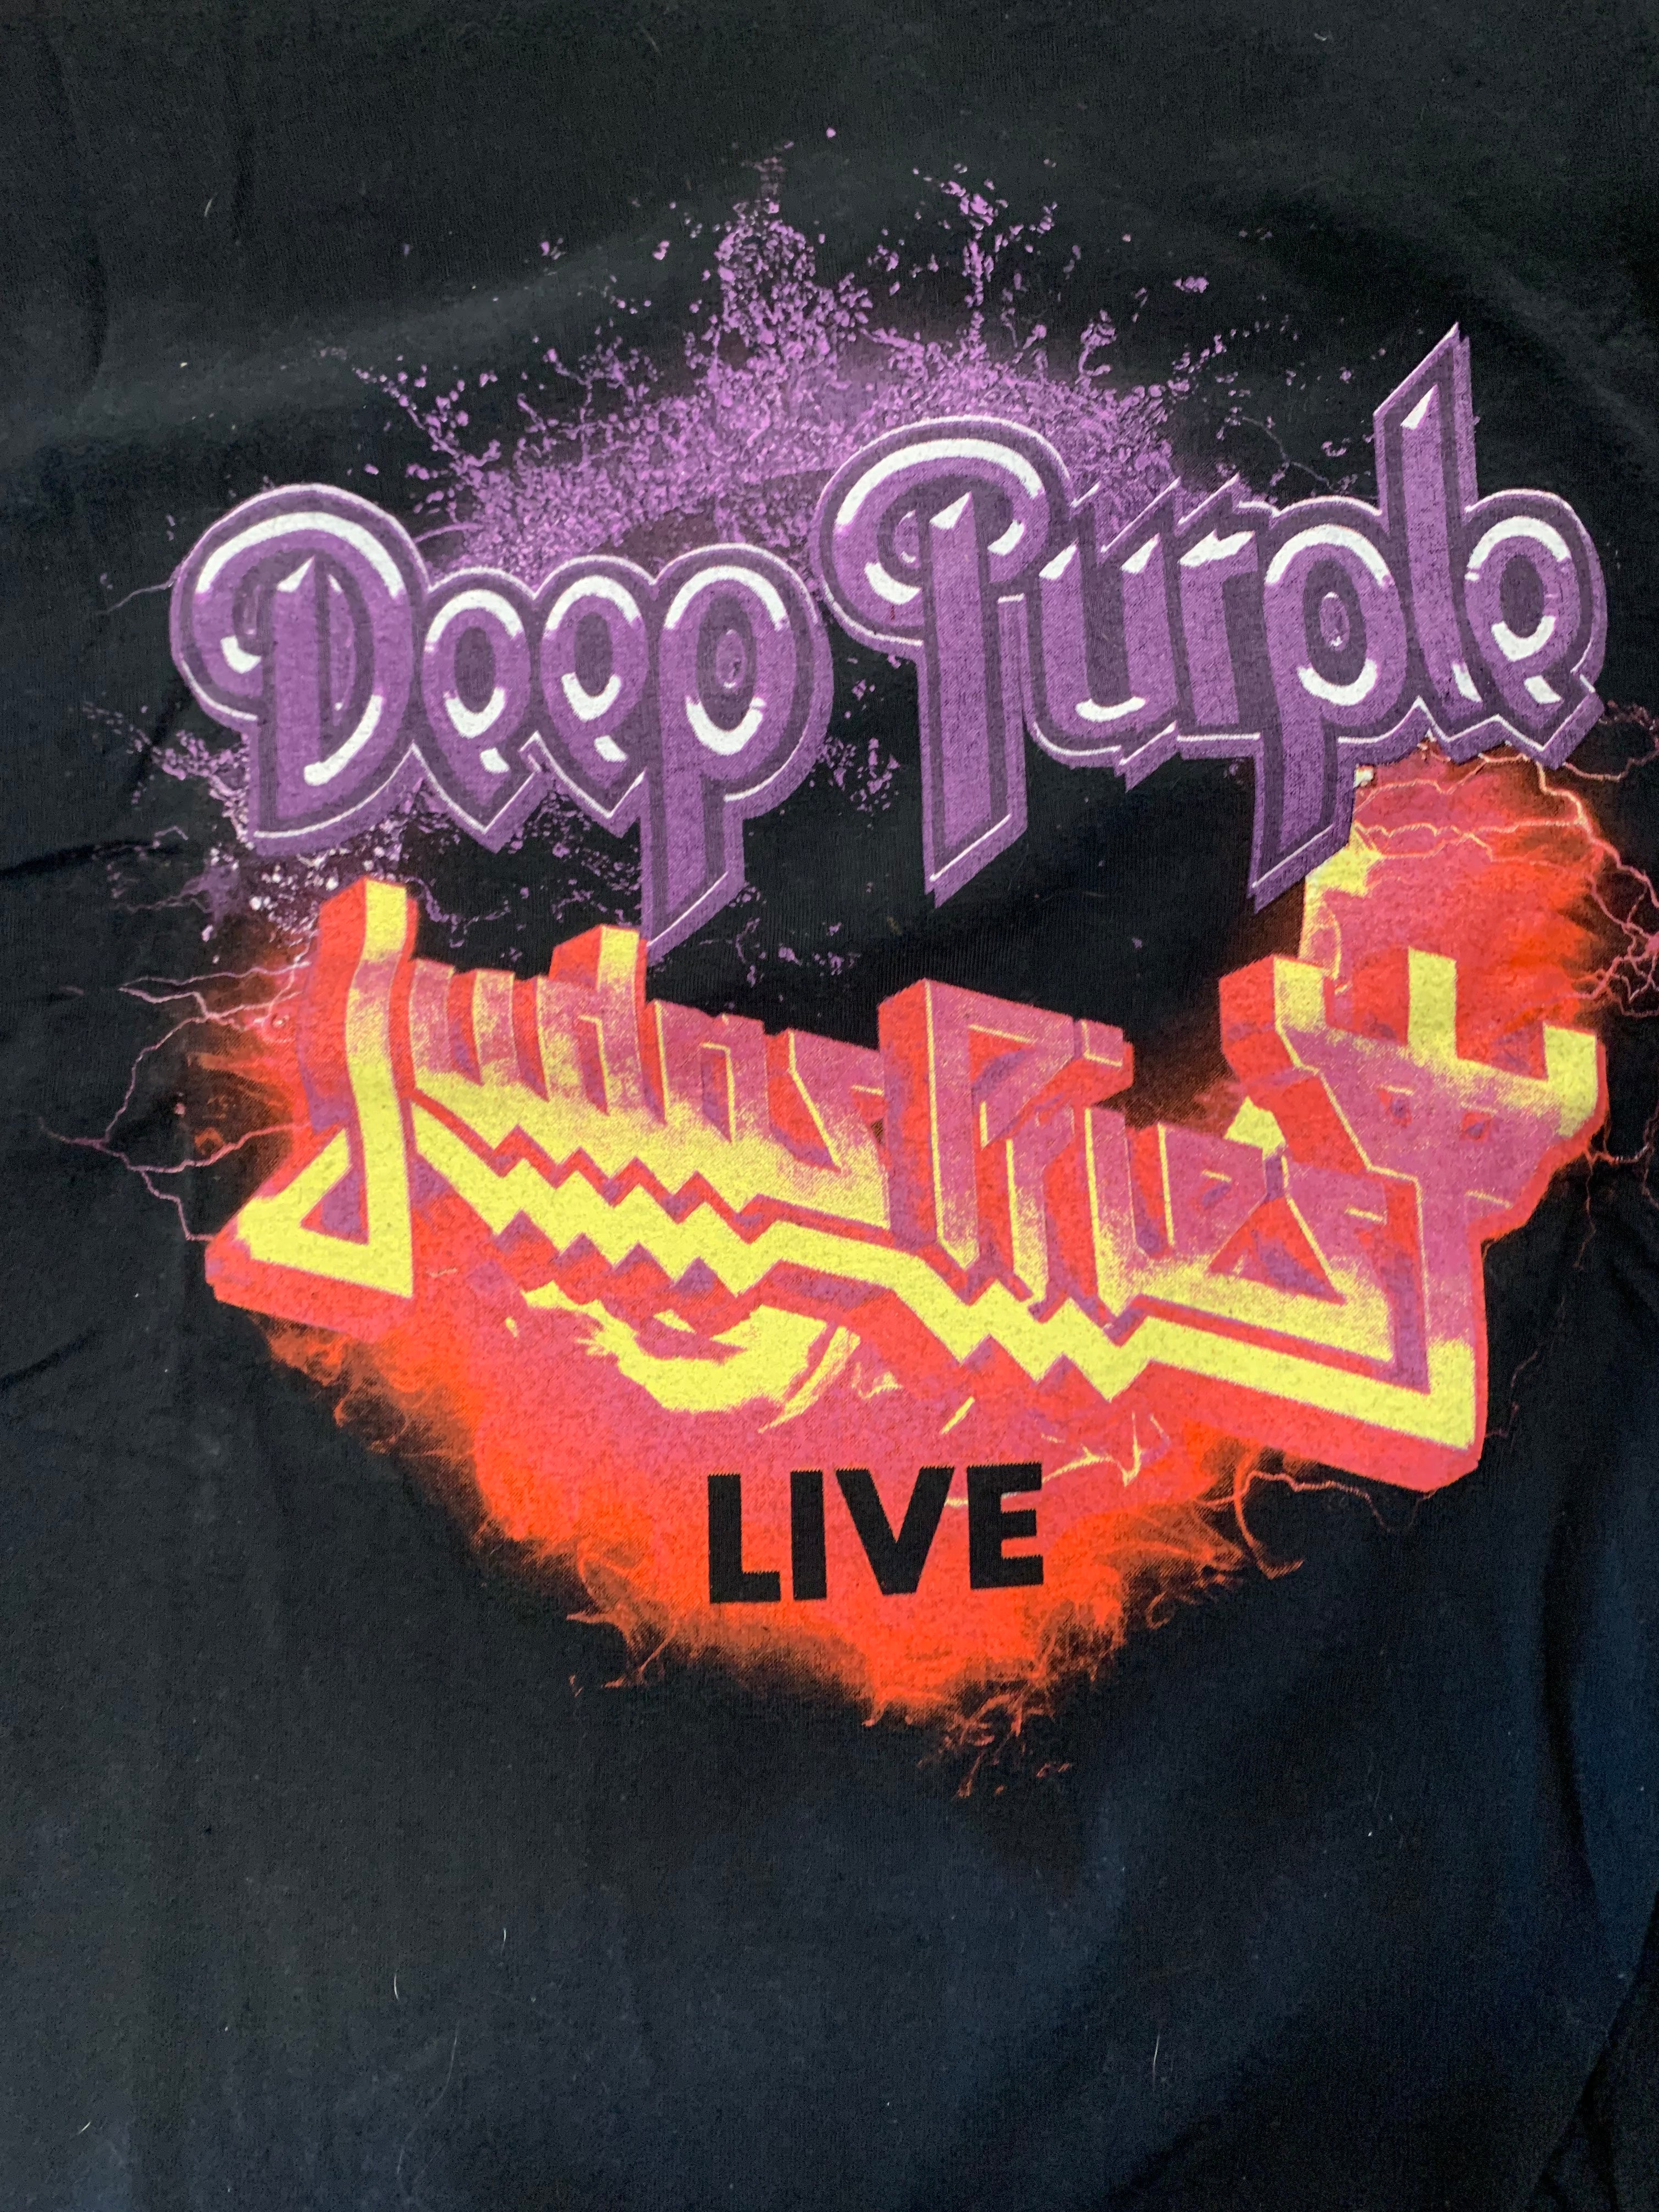 Deep Purple / Judas Priest 2018 Tour T-Shirt, Black, 3XL